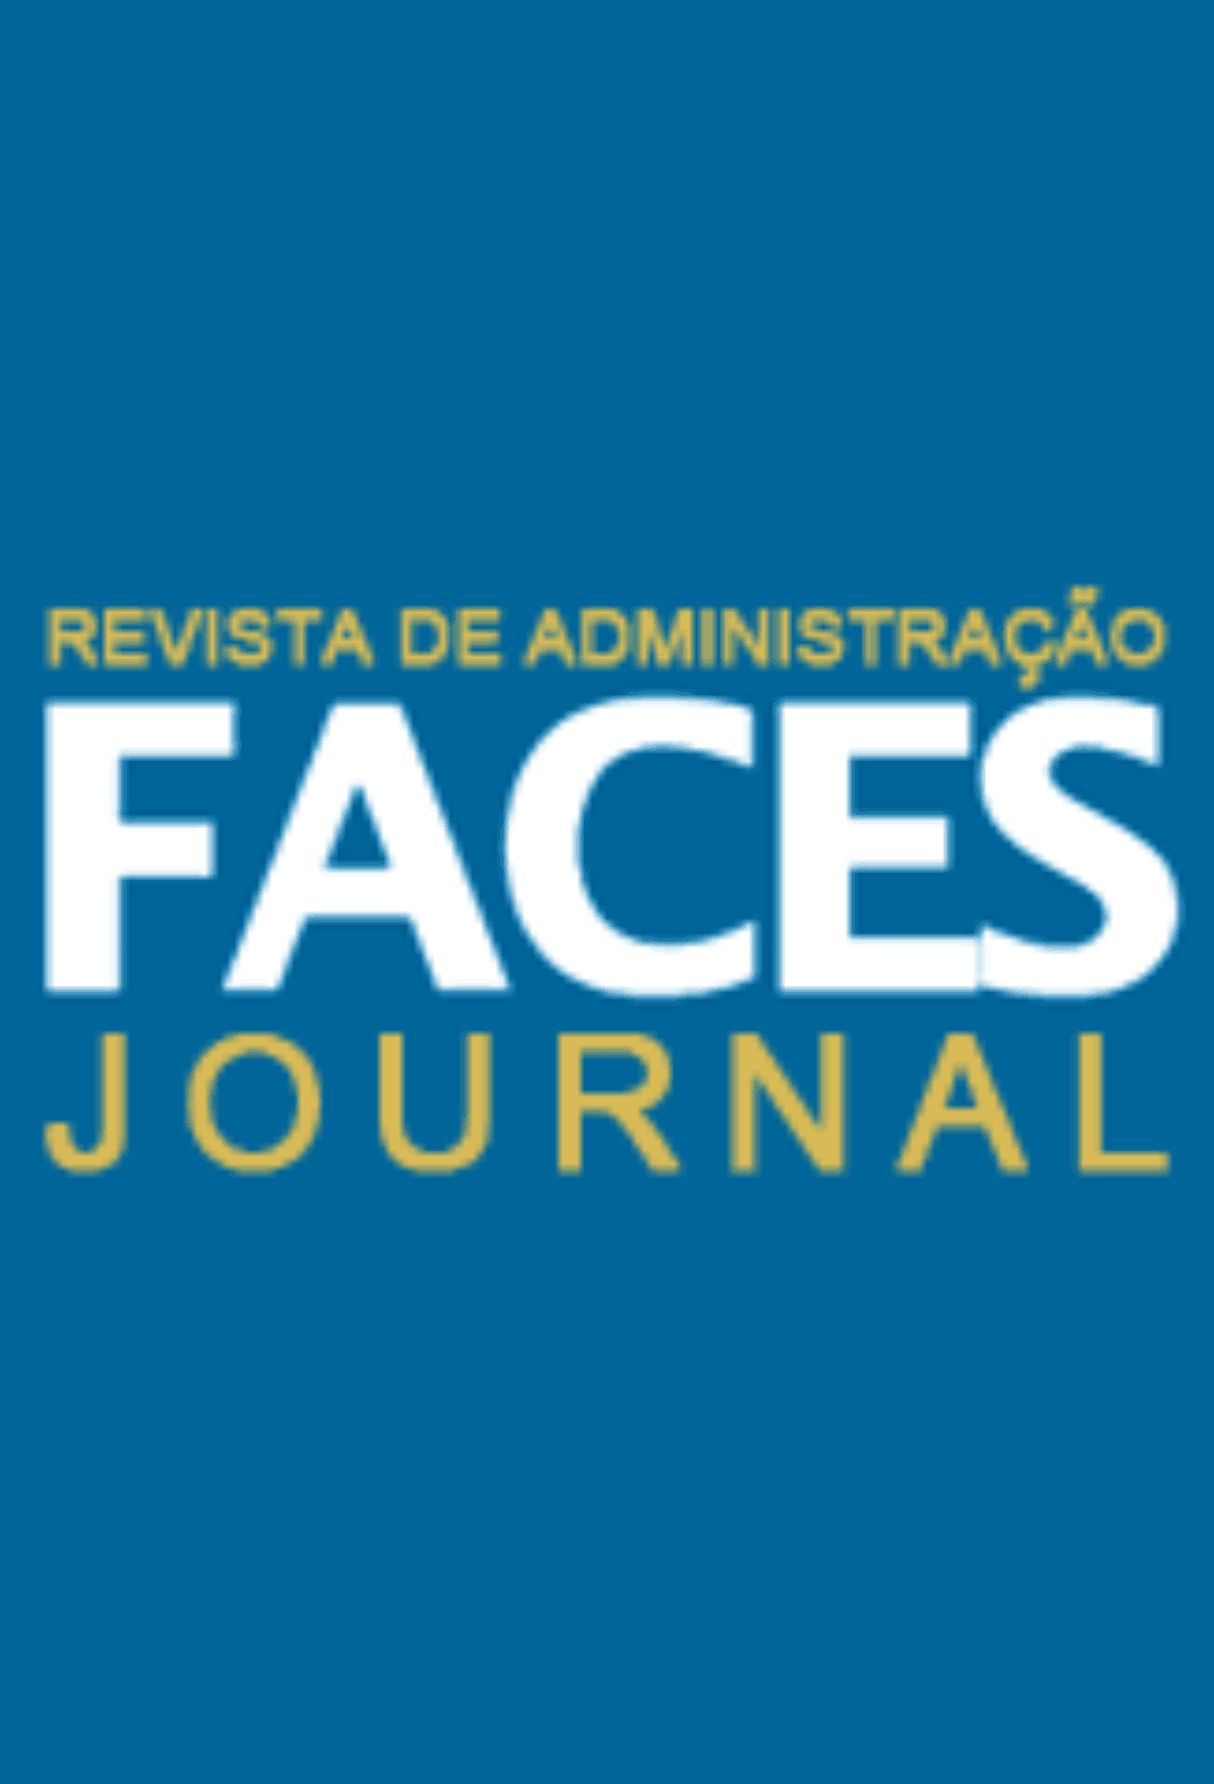 Capa: Revista de Administração Faces Journal